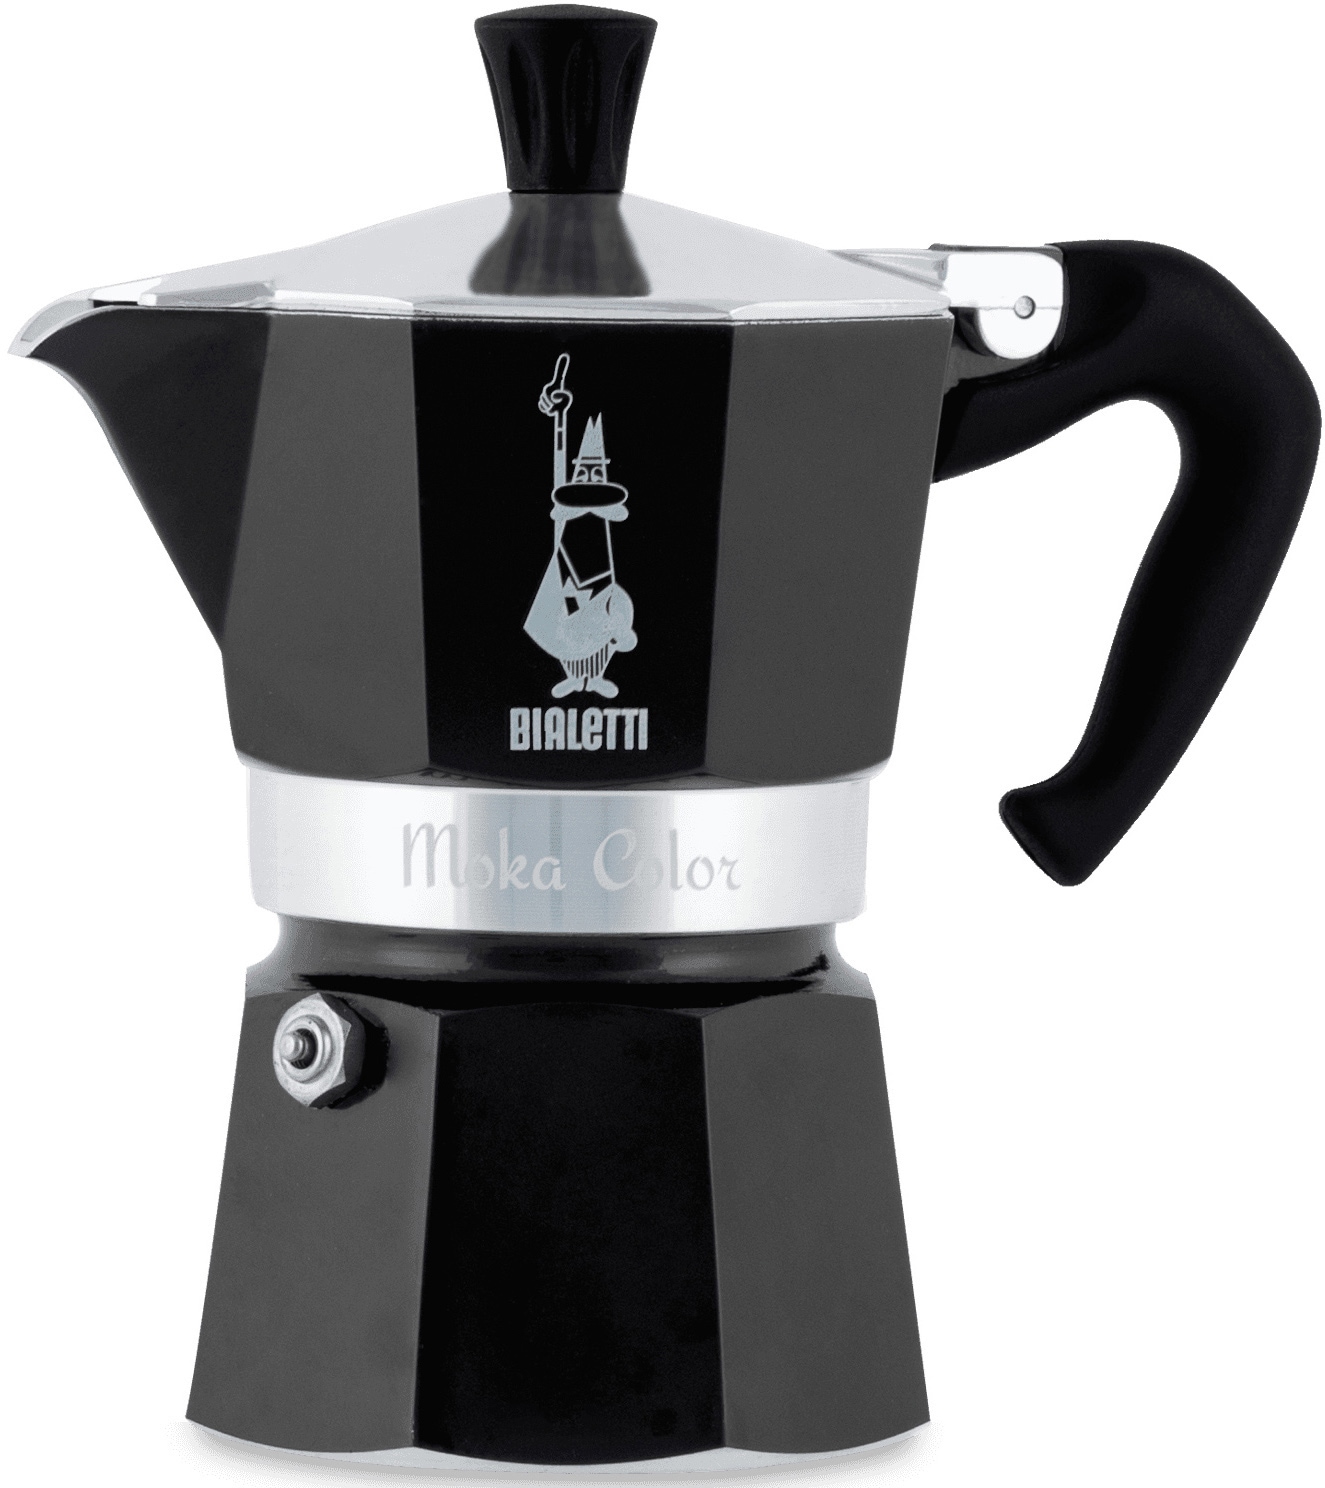 BIALETTI Espressokocher »Moka Express«, 0,27 l Kaffeekanne, Aluminium, in hochwertiger Lackierung, 1 Tasse